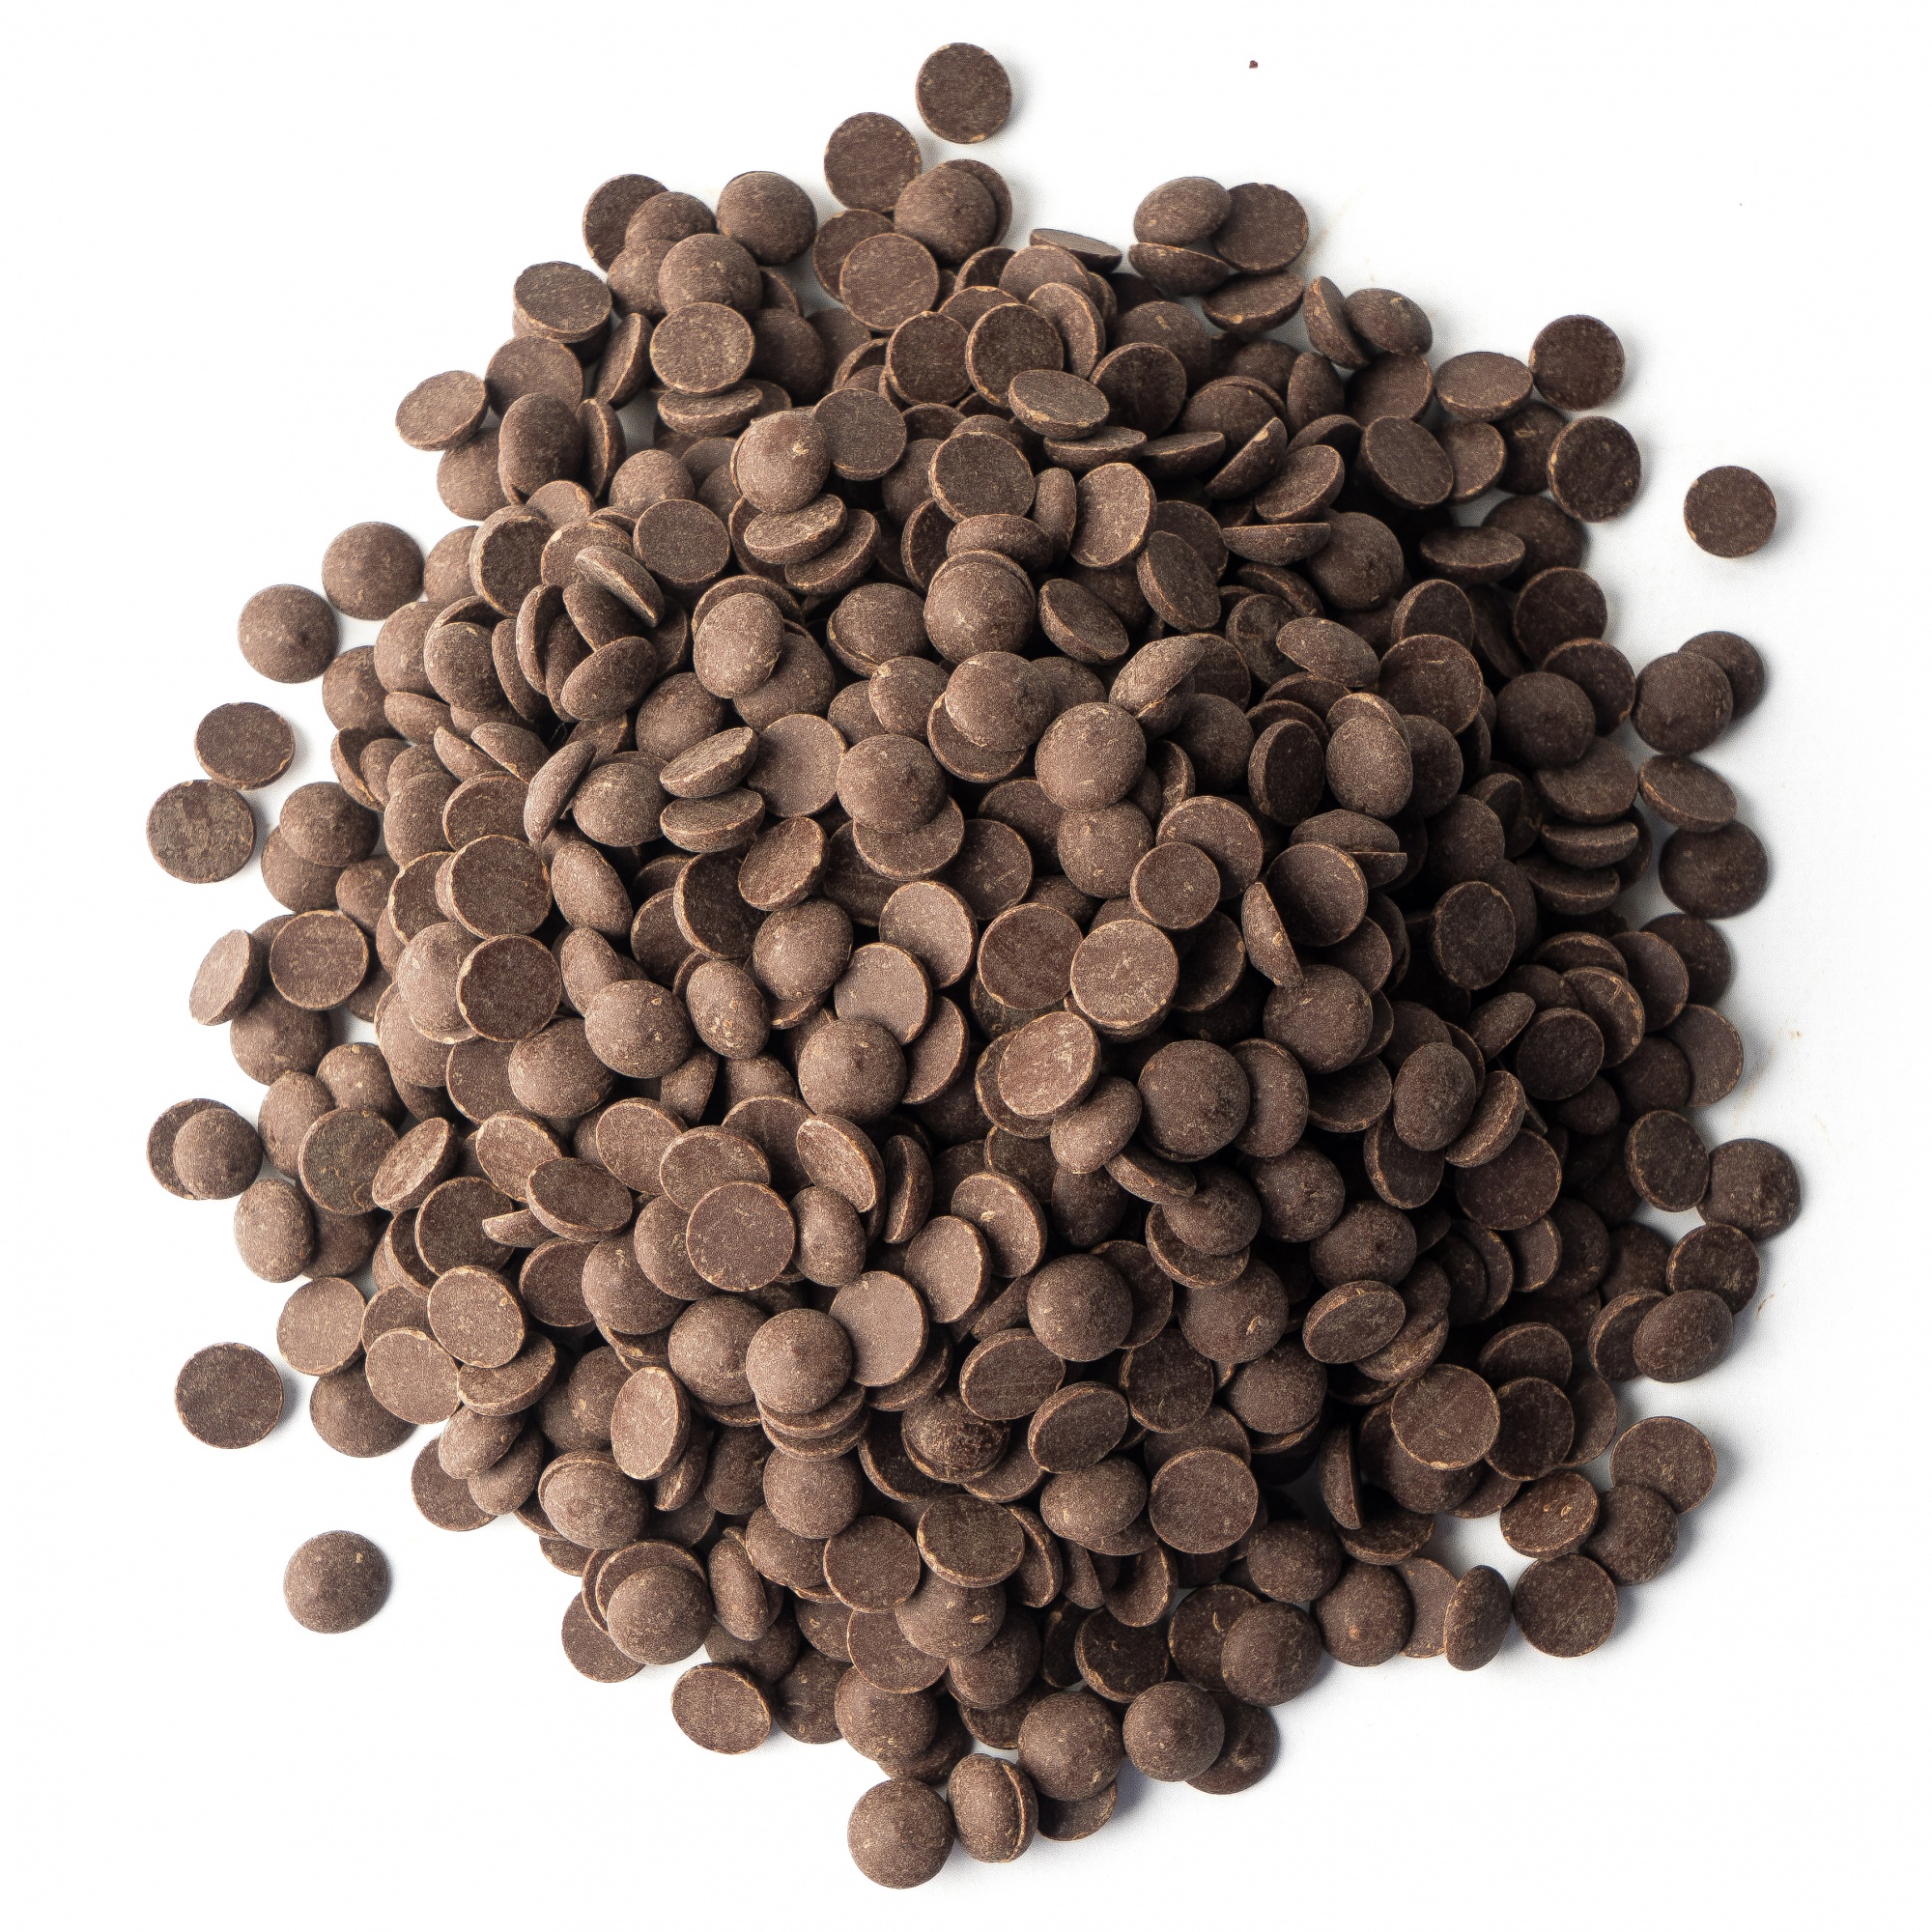 Шоколад тёмный 54,5%, Callebaut, Бельгия, 500 г  | Фото — Магазин Andy Chef  1